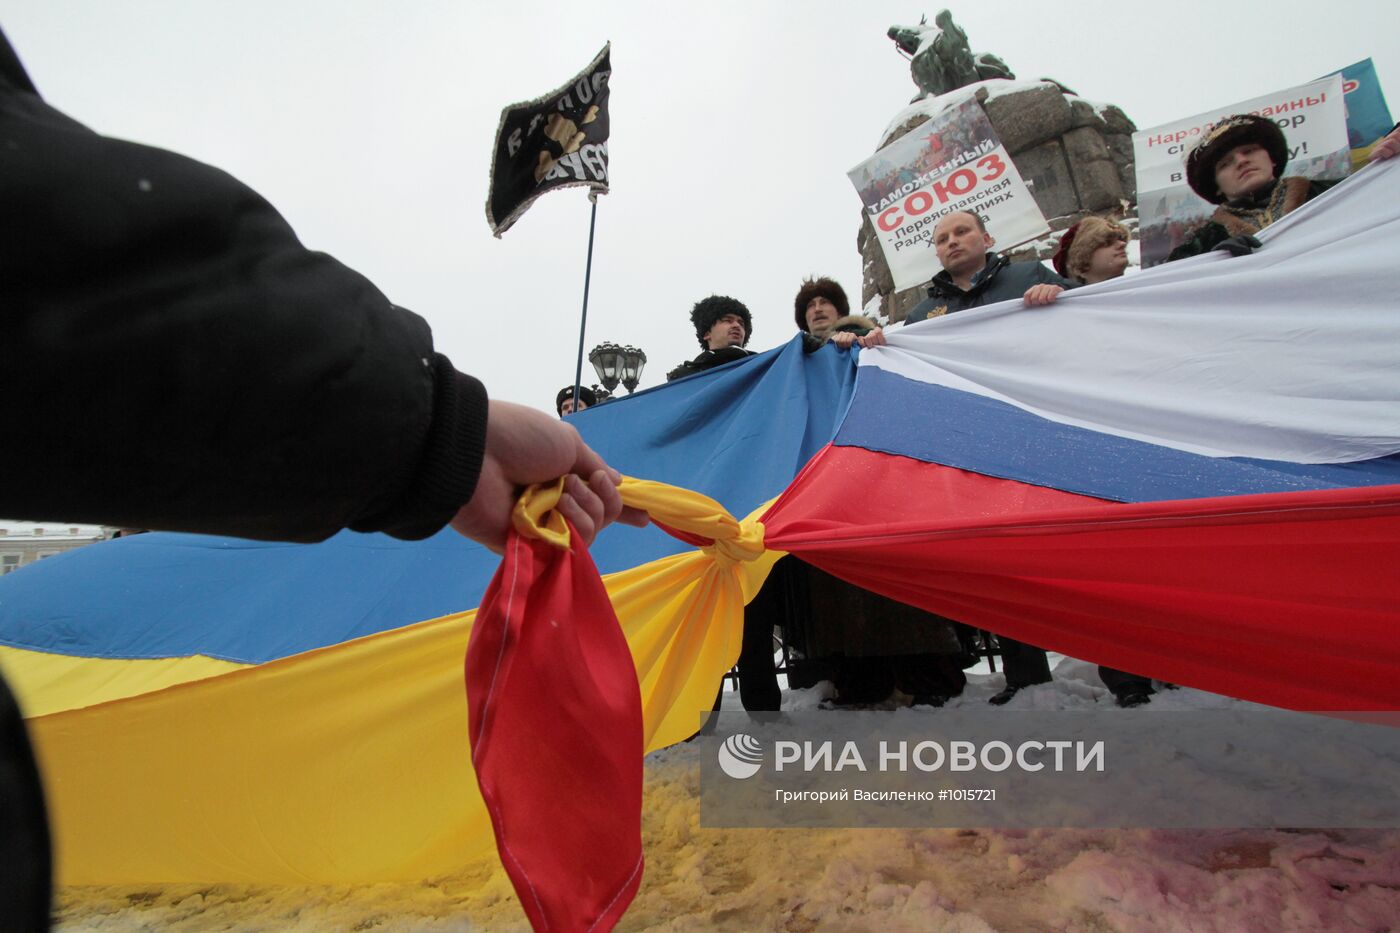 Празднование годовщины Переяславской Рады в Киеве